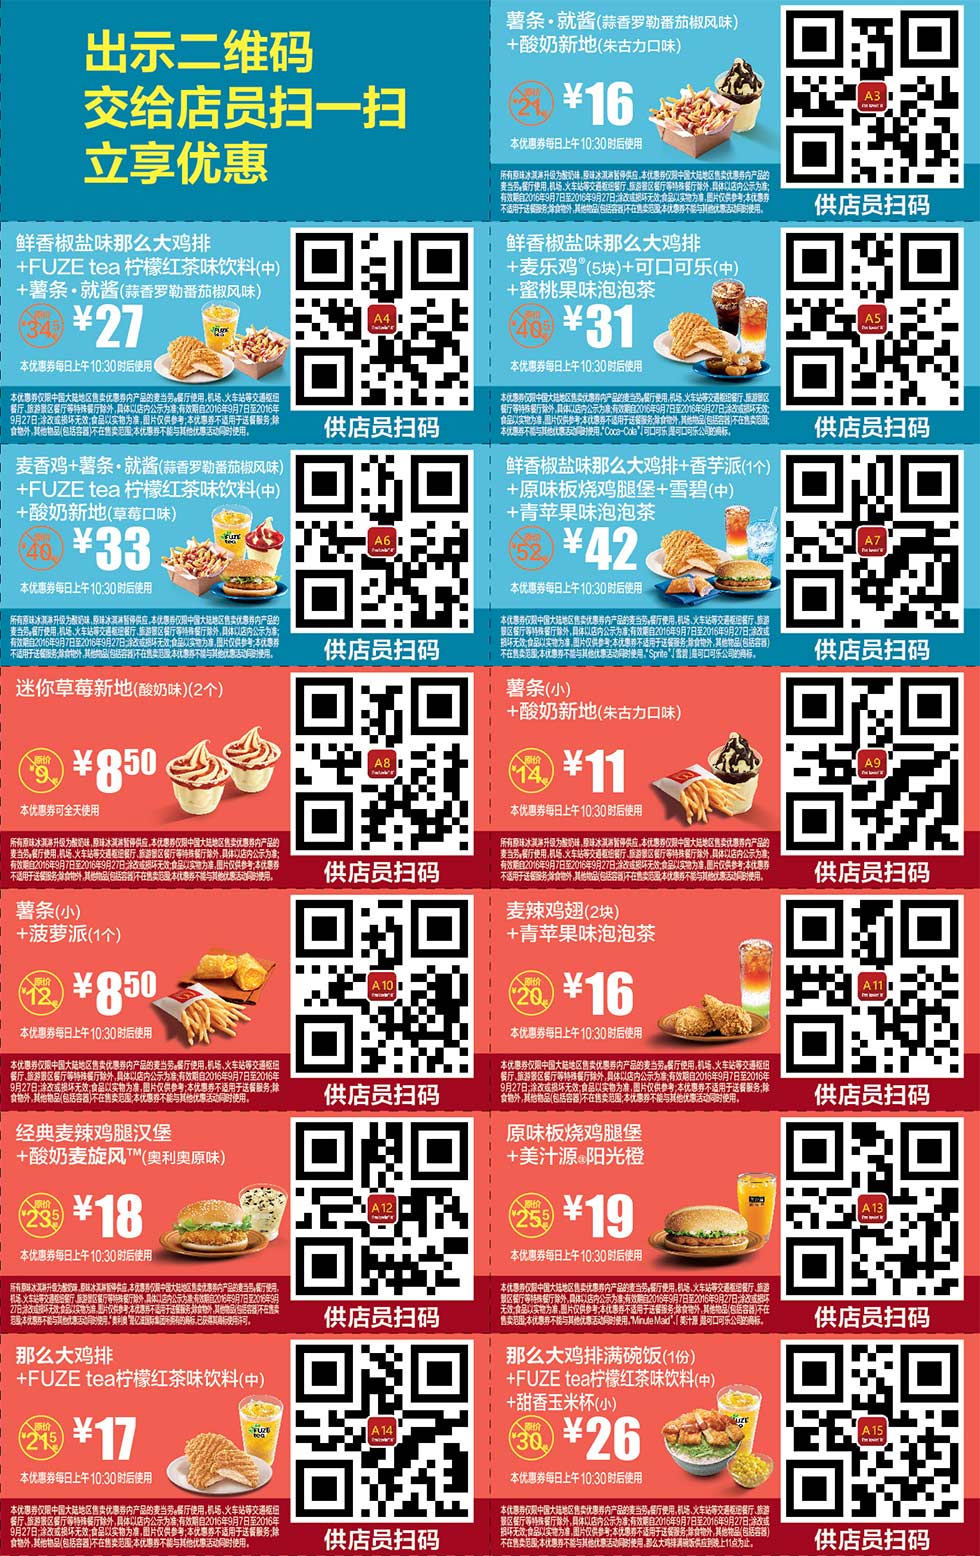 优惠券图片:2016年9月份麦当劳优惠券手机版整张版本，出示二维码立享优惠 有效期2016年09月7日-2016年09月27日